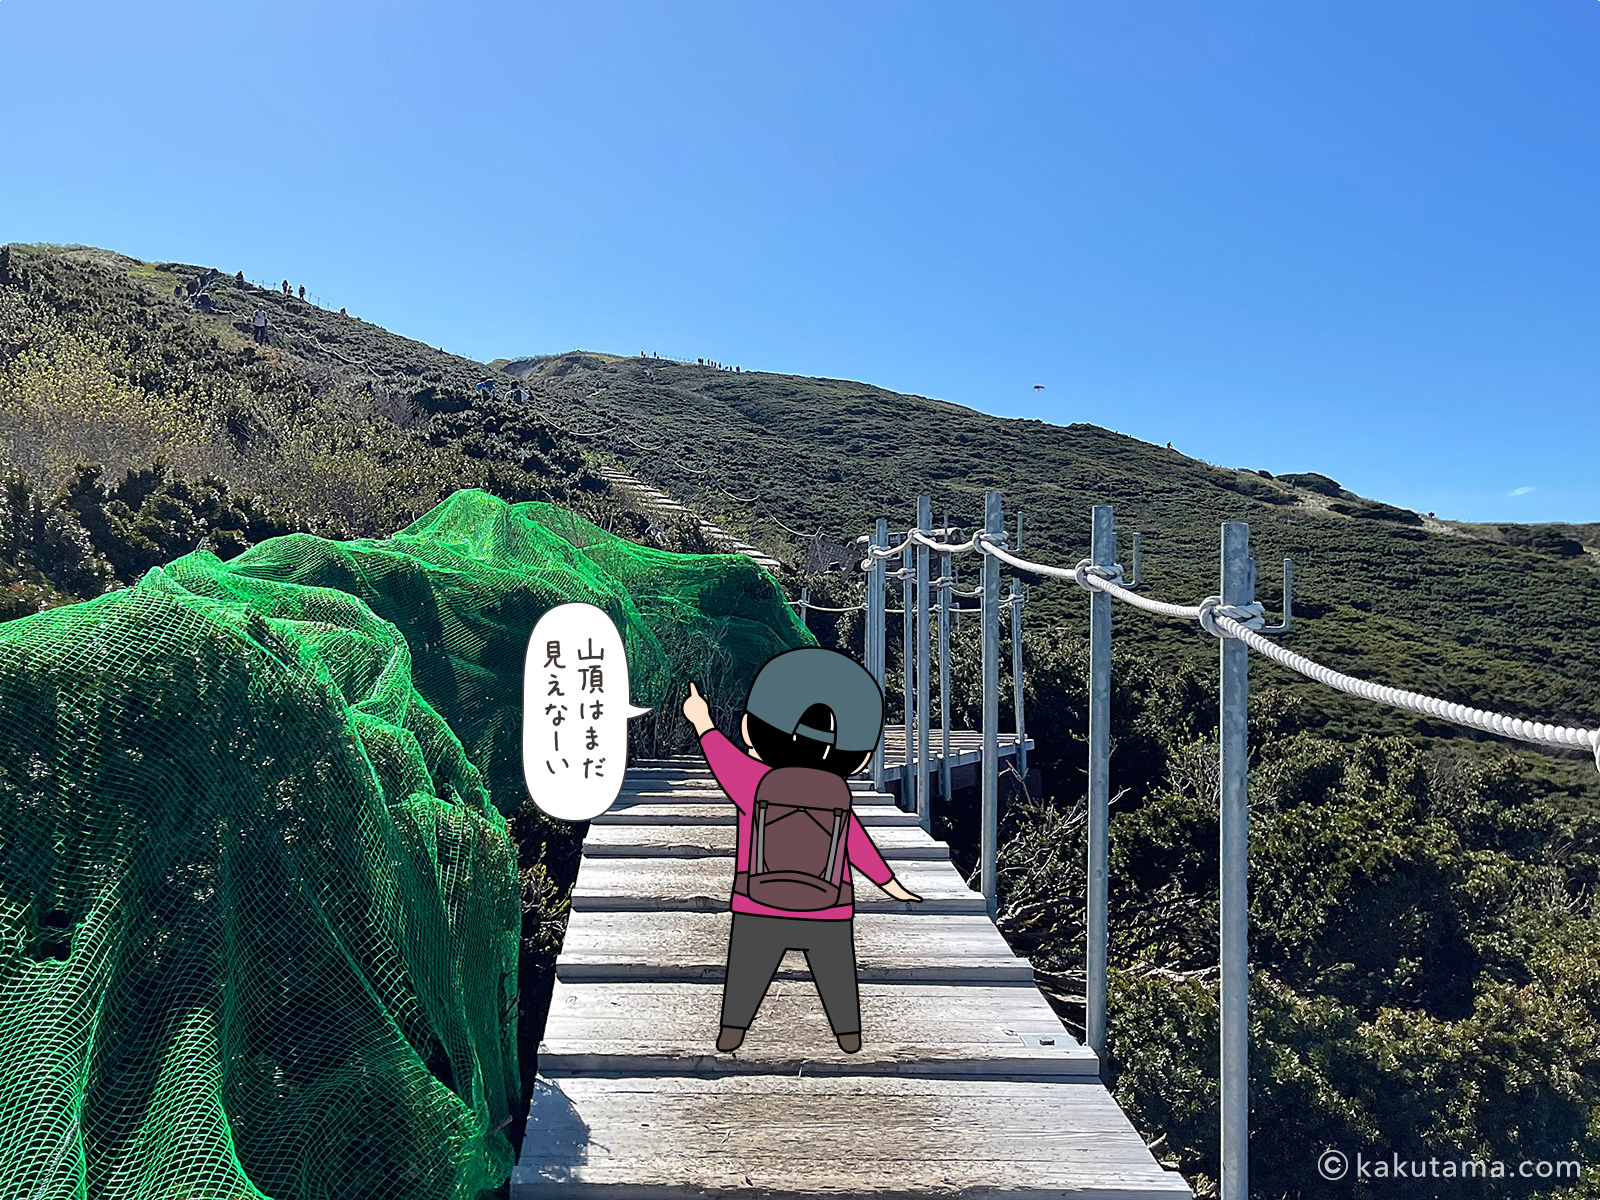 鳥取大山の木道を歩く写真と登山者のイラスト